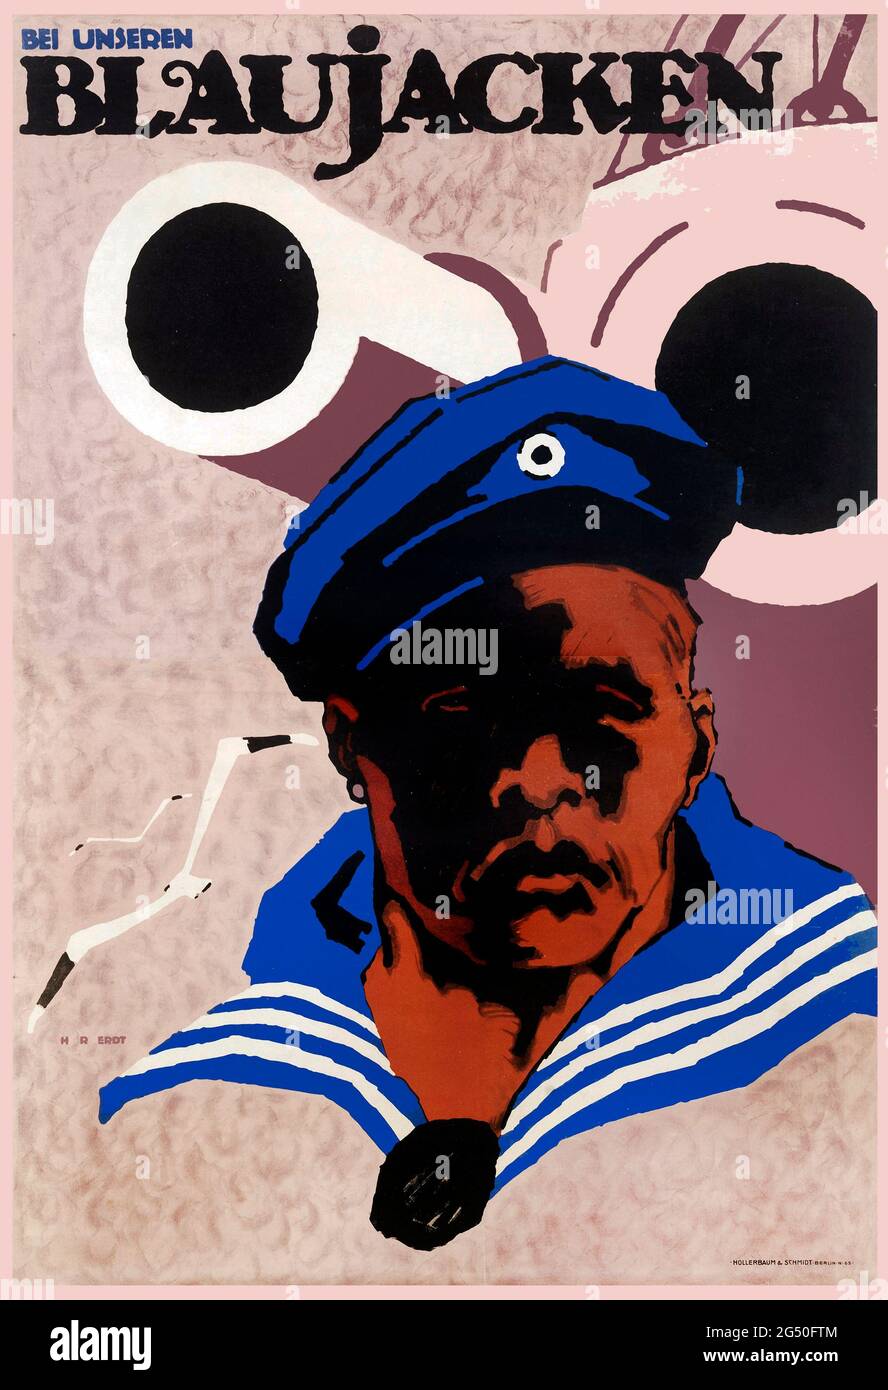 Plakat der kaiserlichen deutschen Marine aus der Zeit des Ersten Weltkriegs. Bei unseren Blaujacken (mit unserer Marine). 1914-1918 Stockfoto